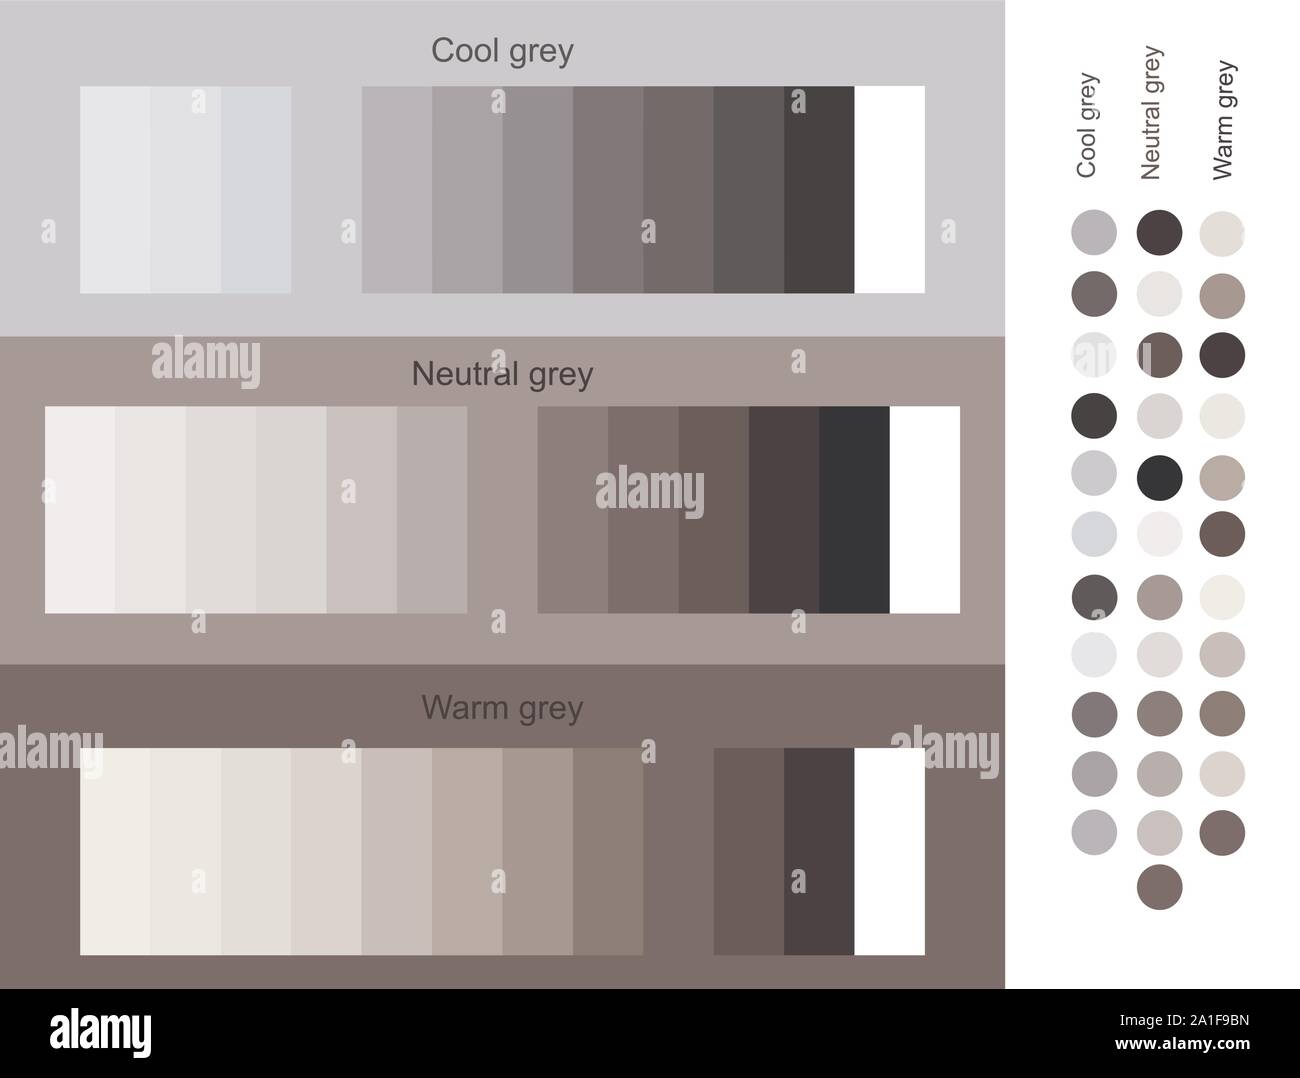 Grauen Farbtönen Trend 2019 eingestellt. Kühl, neutral, warm grey Set smooth Farbverlauf von hell zu dunkel. Einzigartige Farbpaletten für Designer und Architekten. Stock Vektor